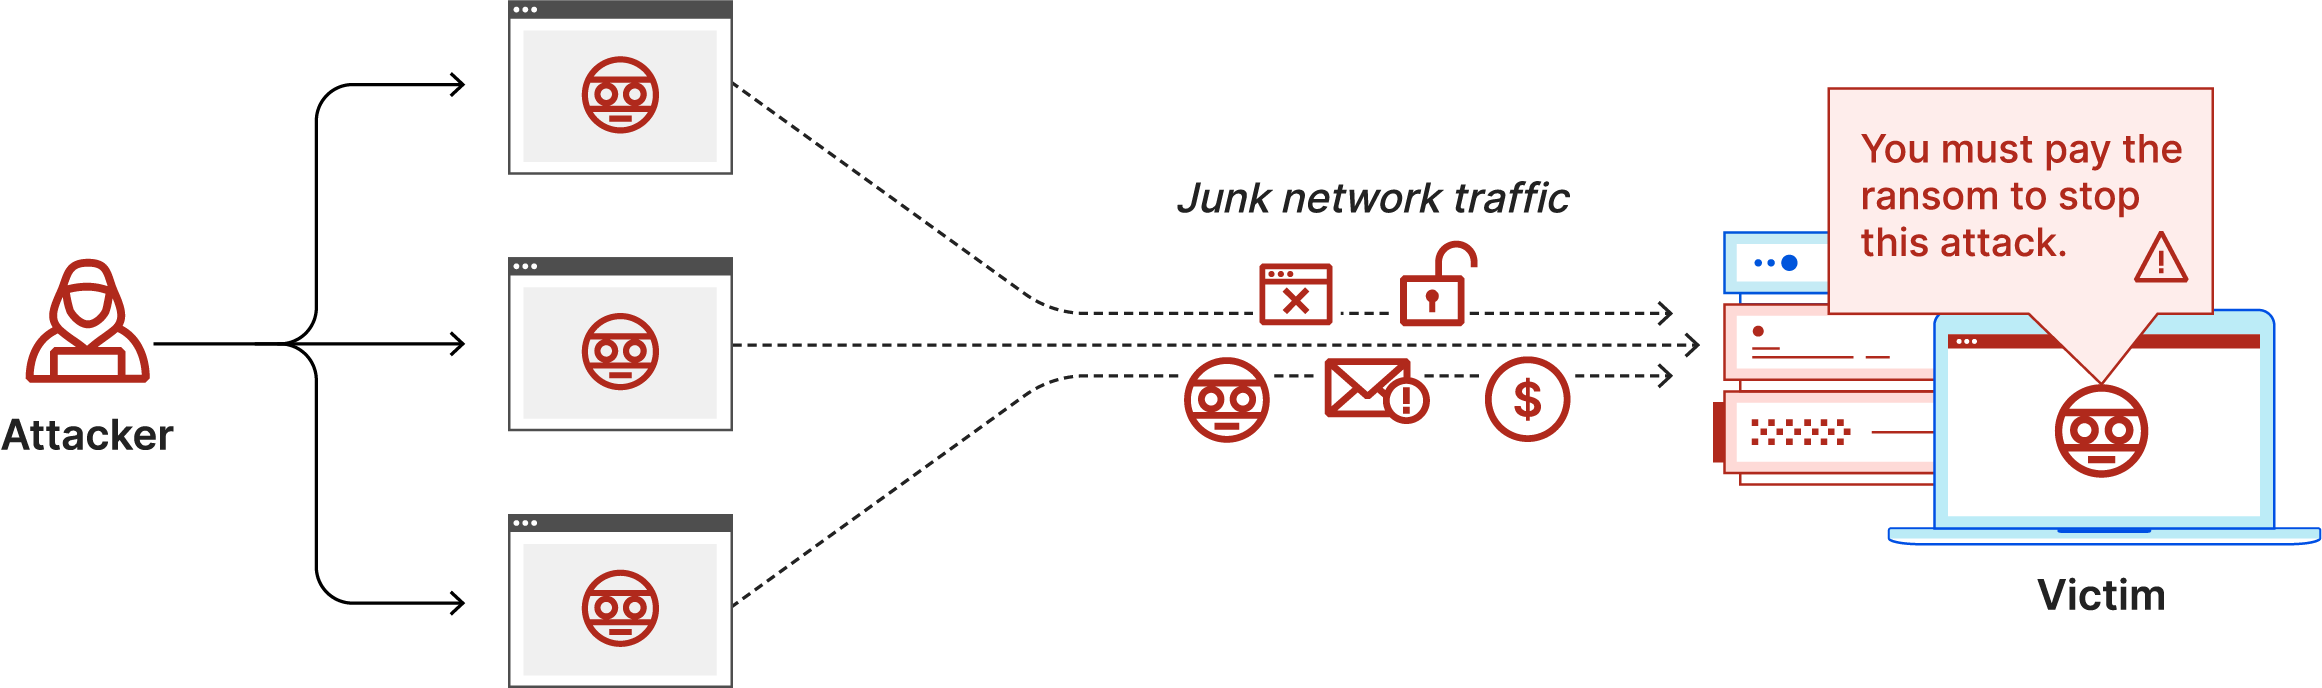 ランサムDDoS攻撃の図：攻撃者が被害者にジャンクネットワークトラフィックと身代金請求書を送りつけます